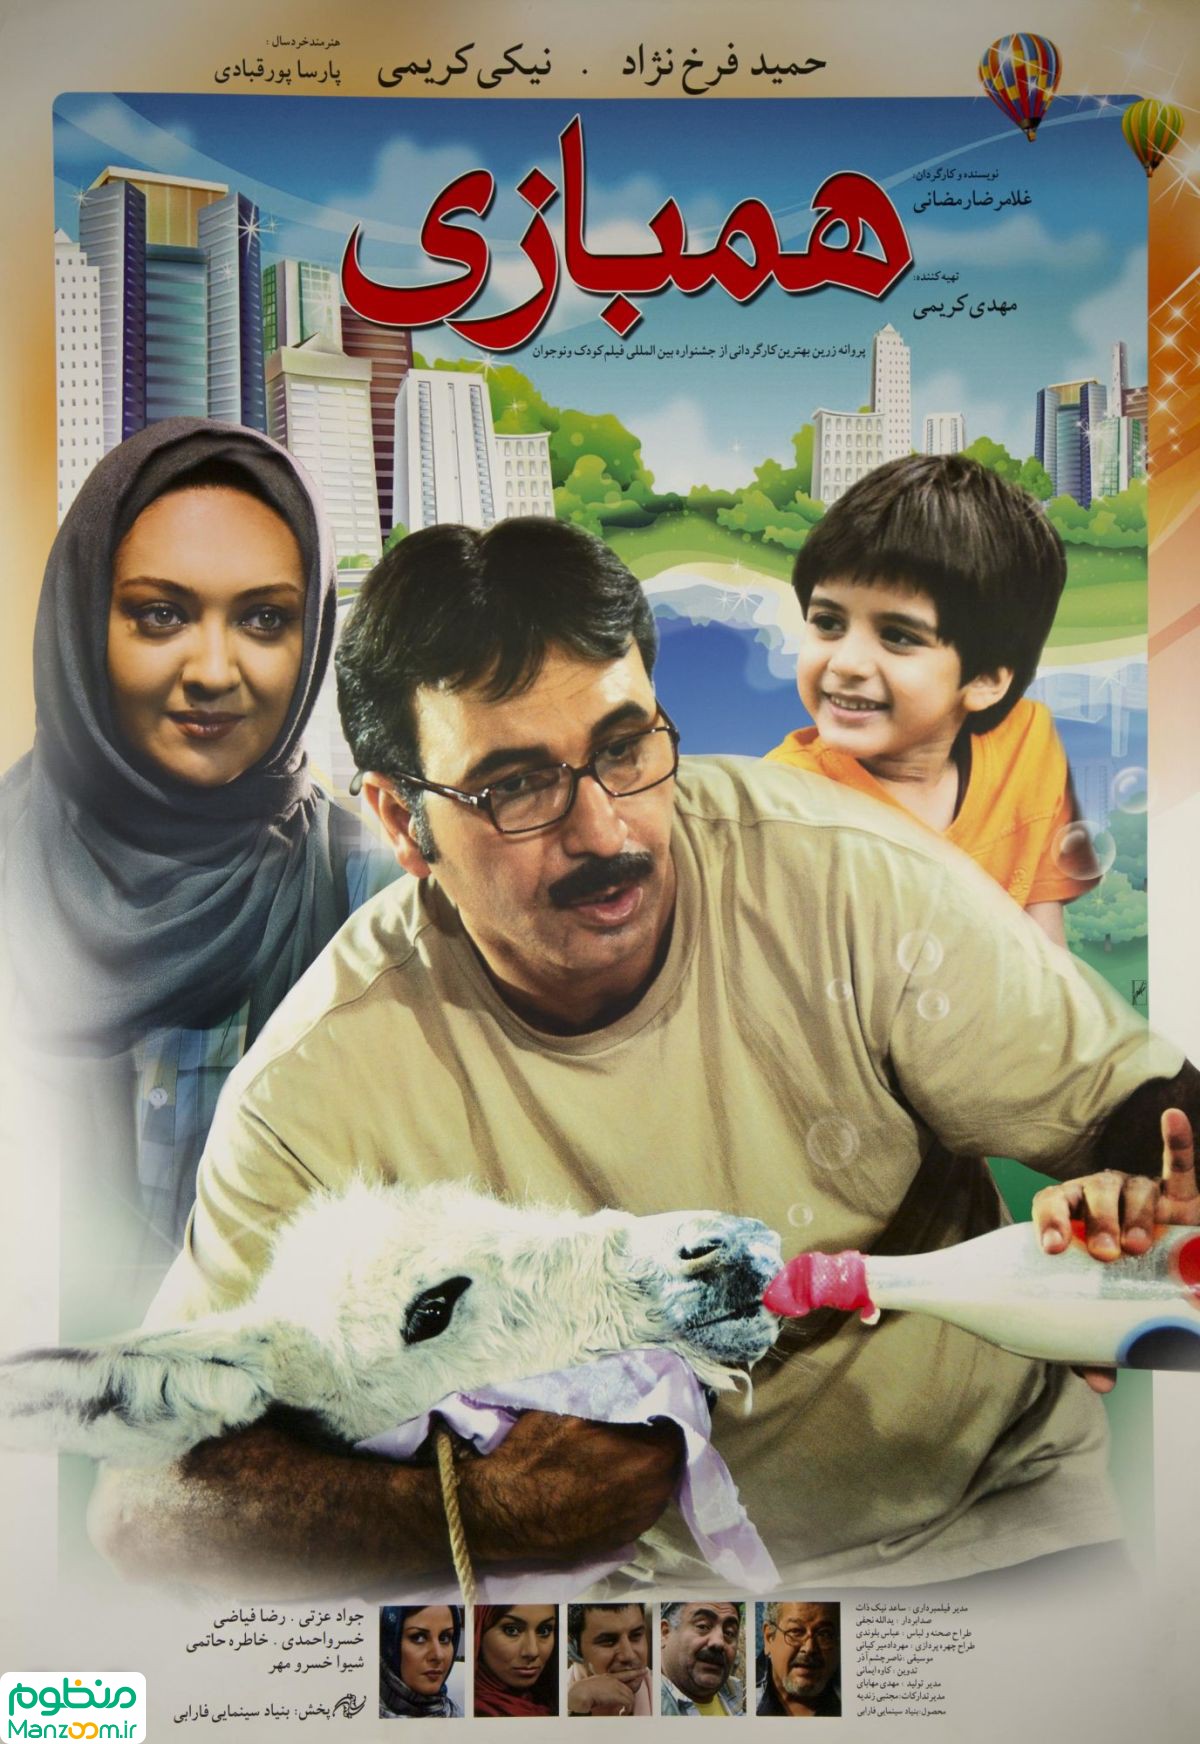  فیلم سینمایی همبازی به کارگردانی غلامرضا رمضانی